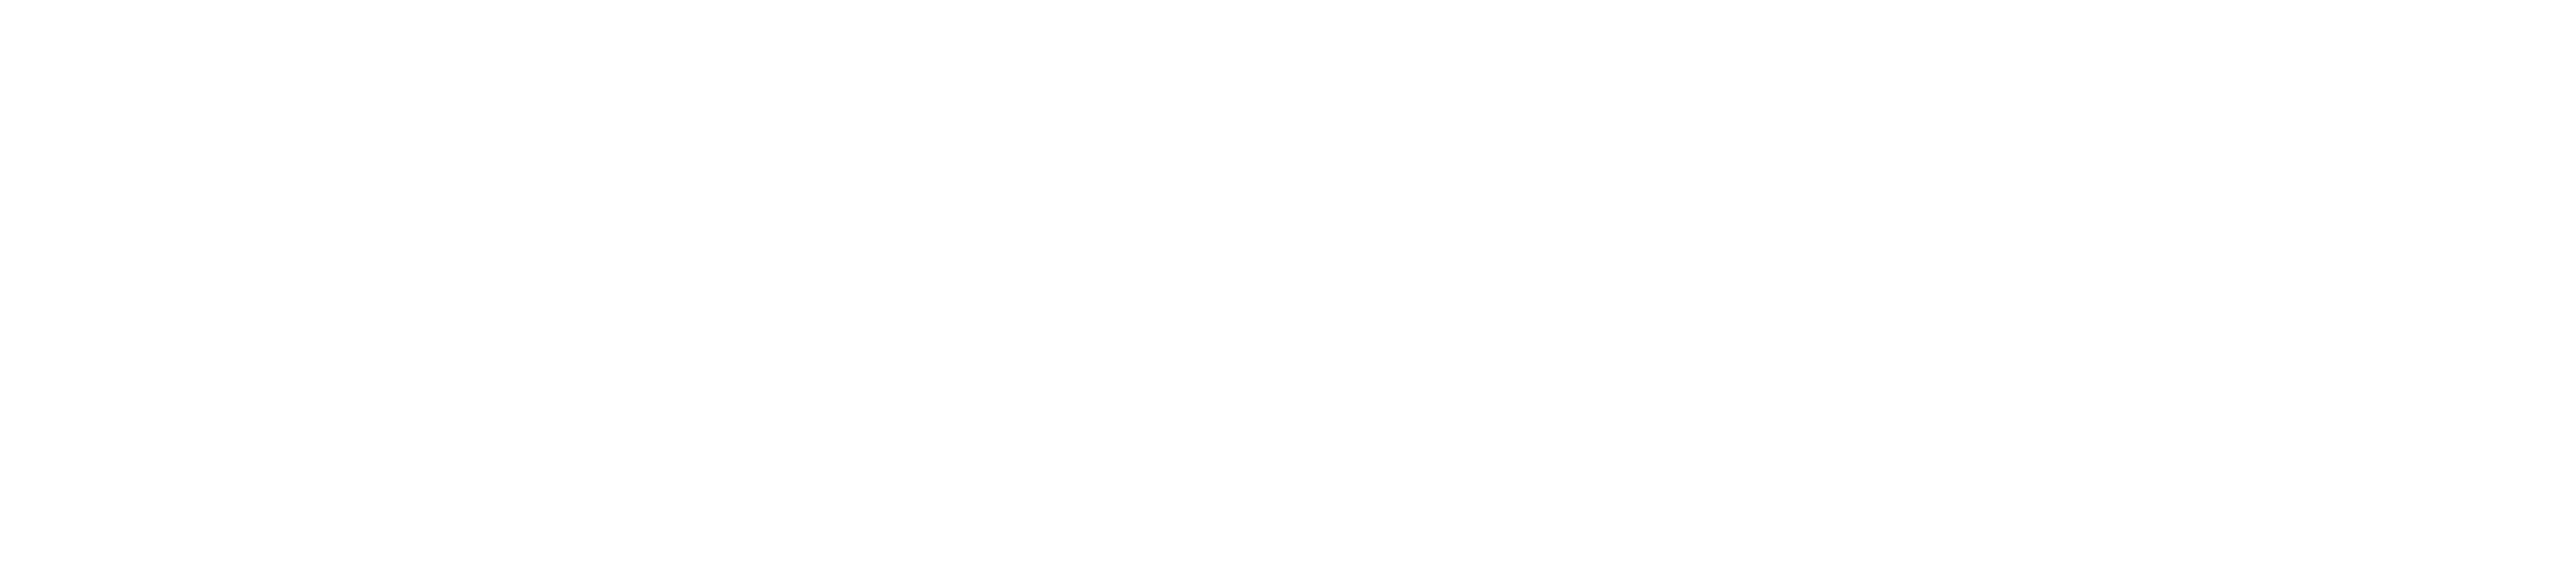 Zalaegerszegi Ady Endre Általános Iskola, Gimnázium és Alapfokú Művészeti Iskola